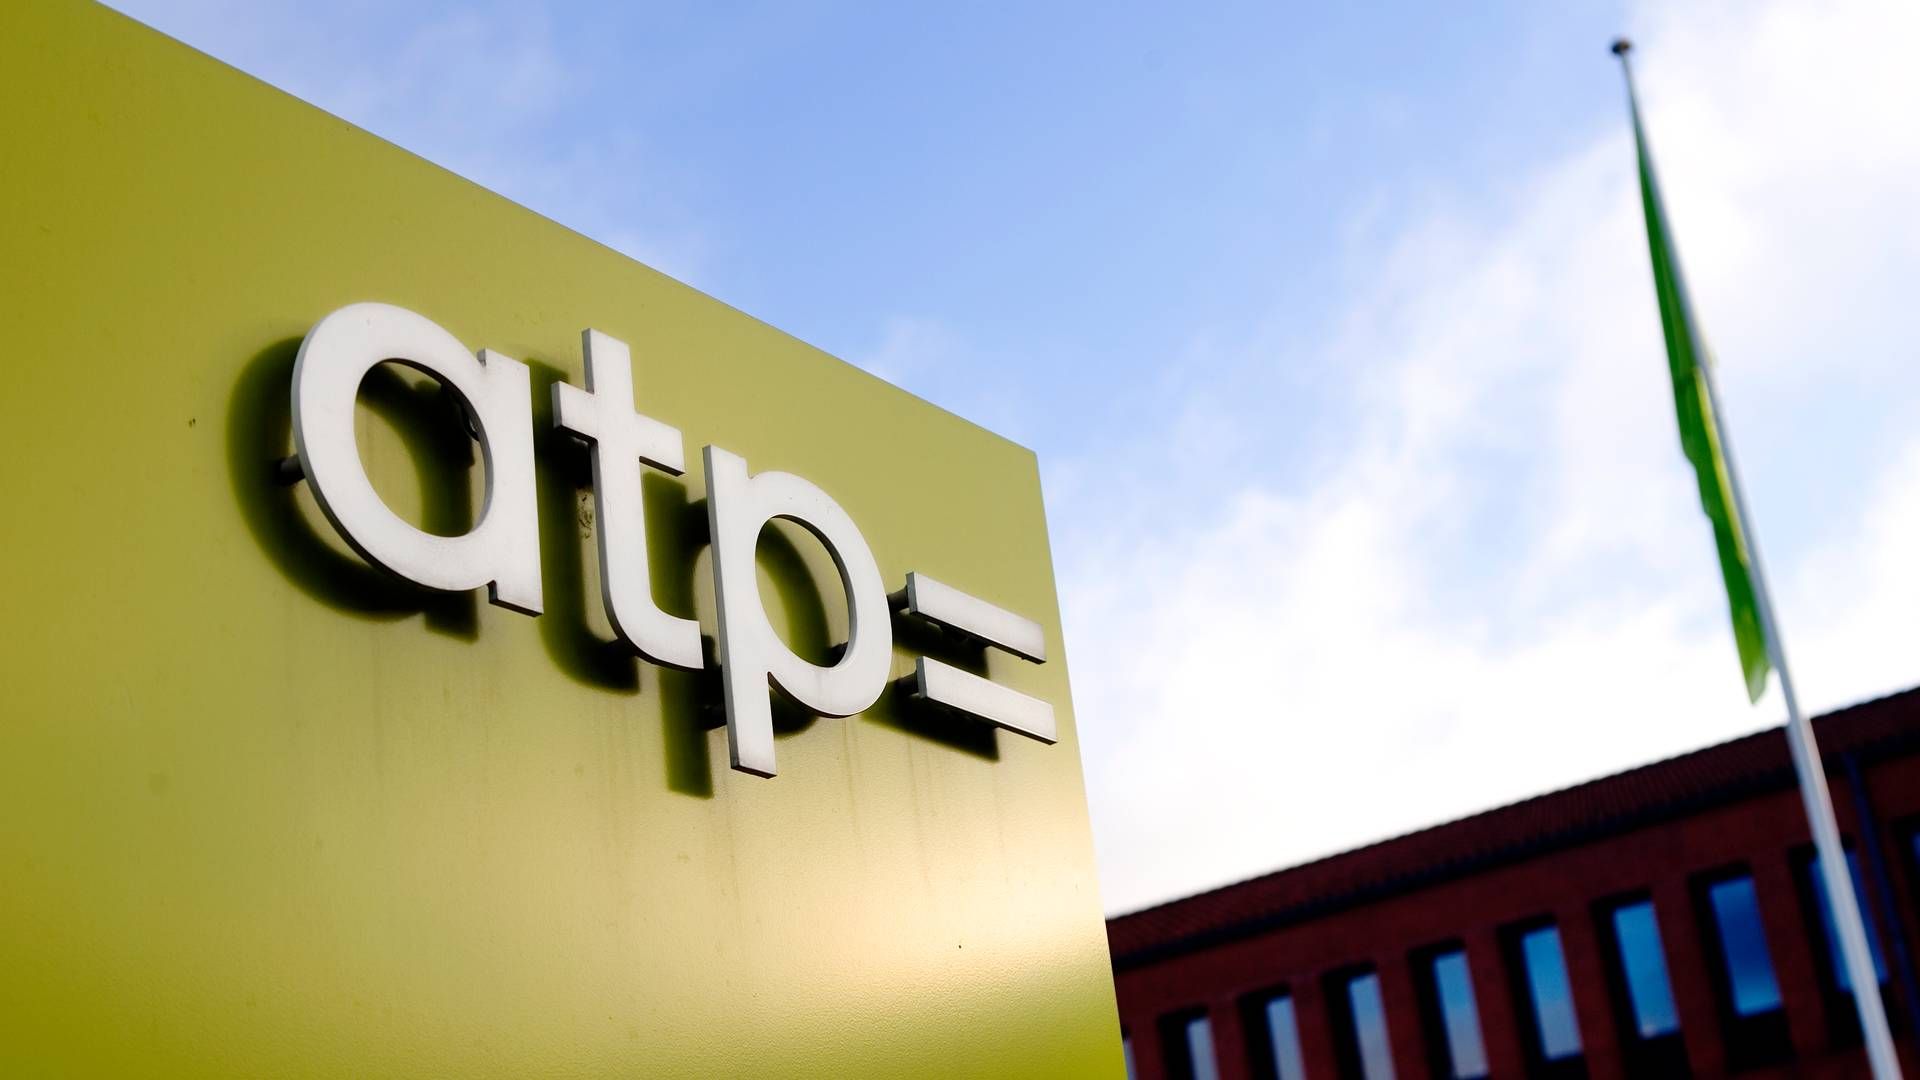 ATP, der er blandt Europas største institutionelle investorer i kapitalfonde, har de senere år reduceret sine tilsagn til PEP-fonde betragteligt. | Foto: Thomas Borberg